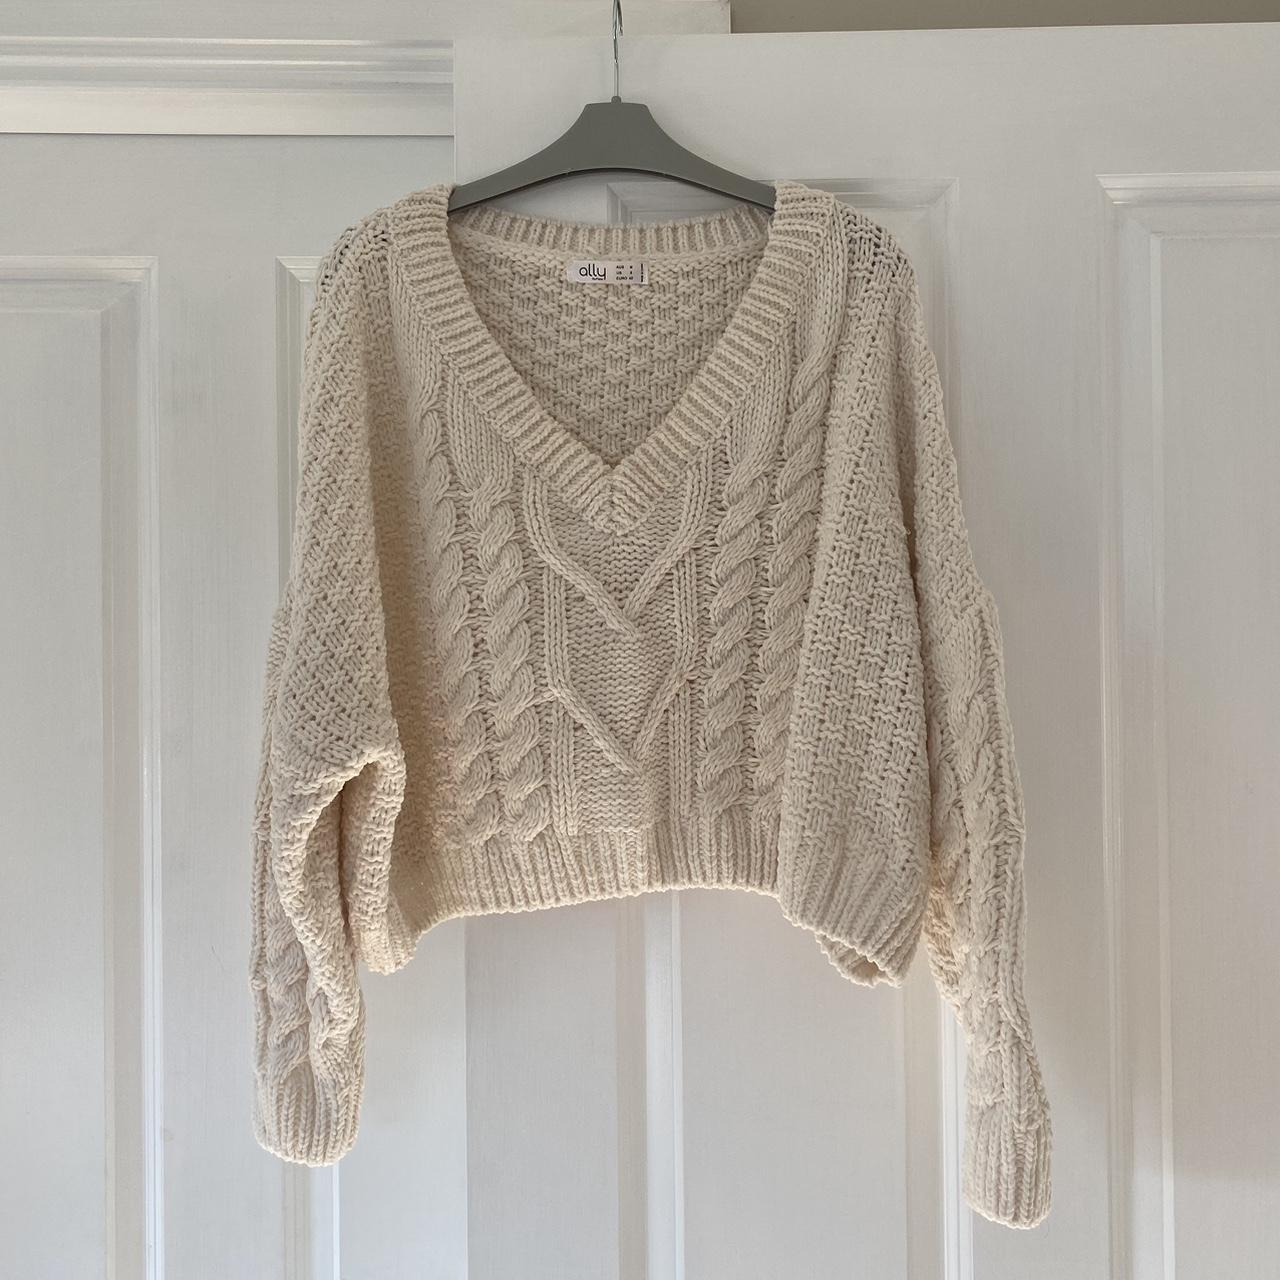 Ally cropped cream knit, boxy oversized fit. Size... - Depop